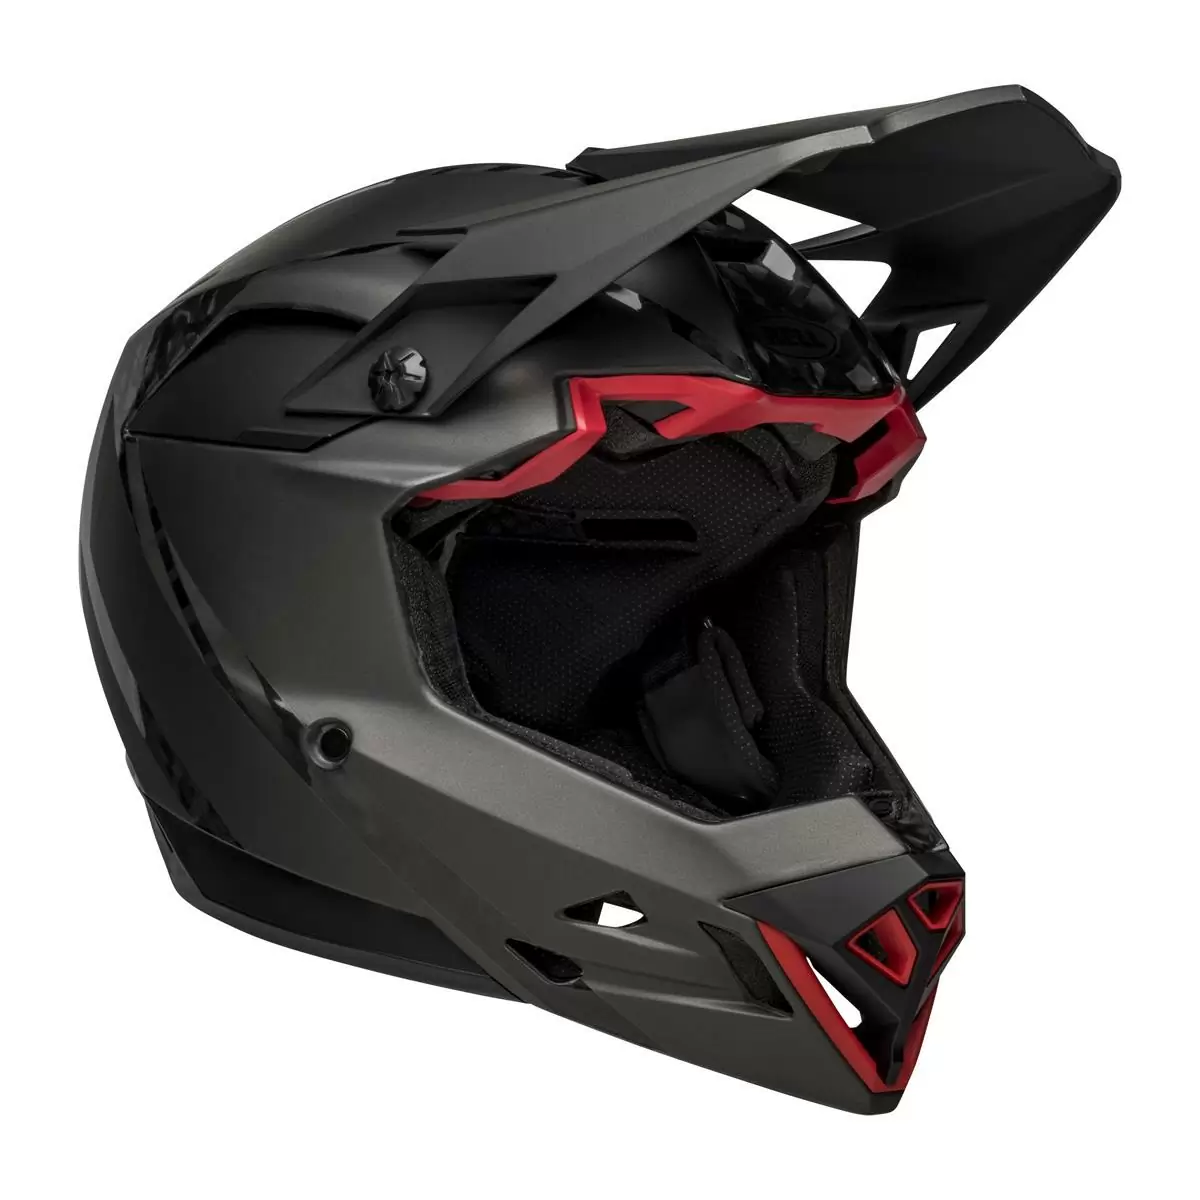 Full-10 Spherical Arise Matte / Gloss Black Carbon Full Face Helmet Size M (55-57cm) - image